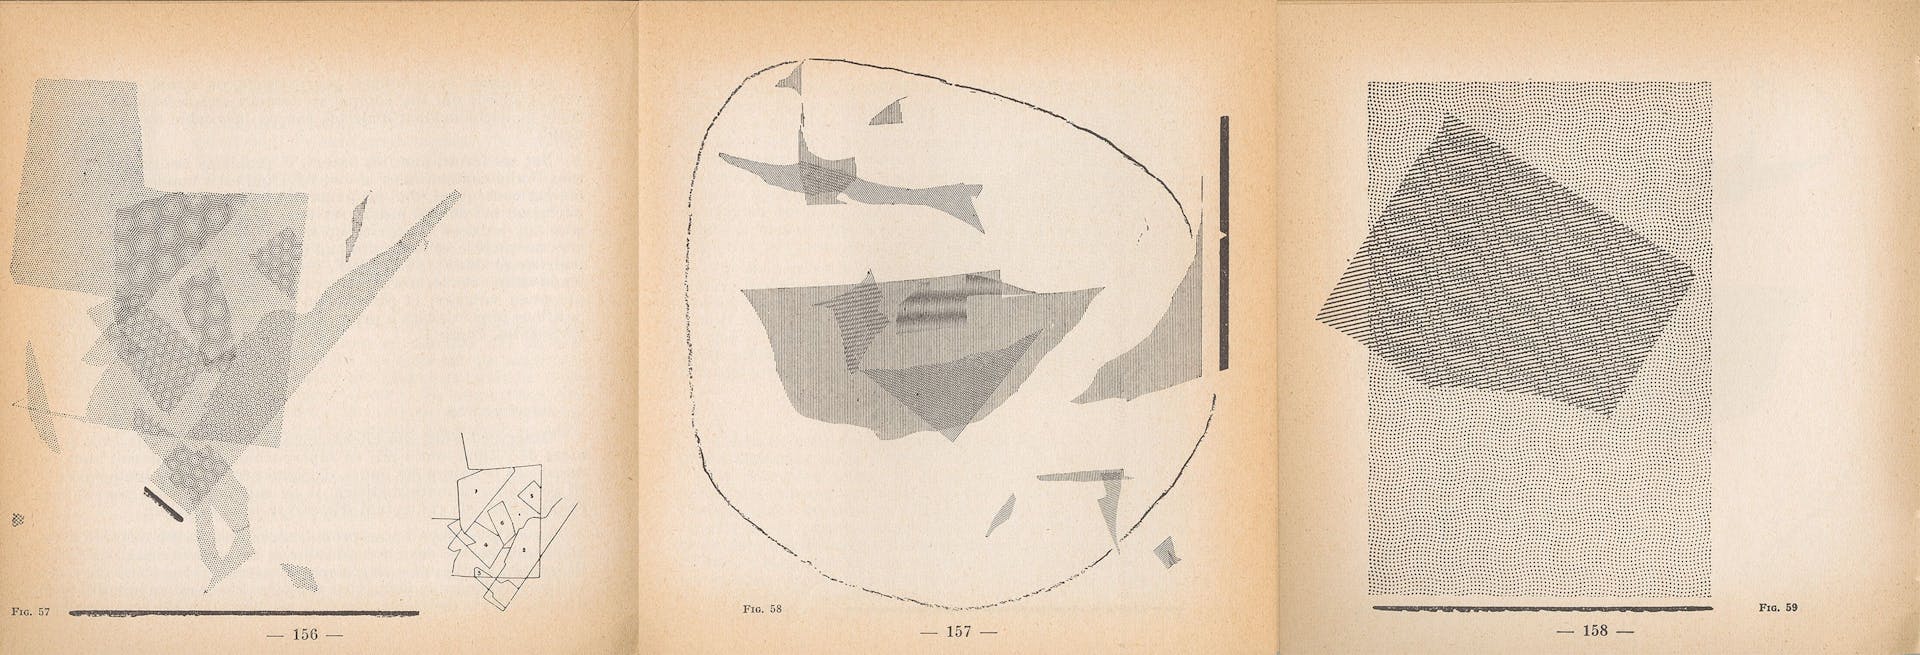 Het spel met het roteren en op elkaar leggen van verschillende rasters met punten en lijnen van Zip-A-Tone leverde volgens Le Corbusier enerverende patronen op. Ze vormden een inspiratiebron voor zijn ontwerp van tapijten en gevels. Bron:… 